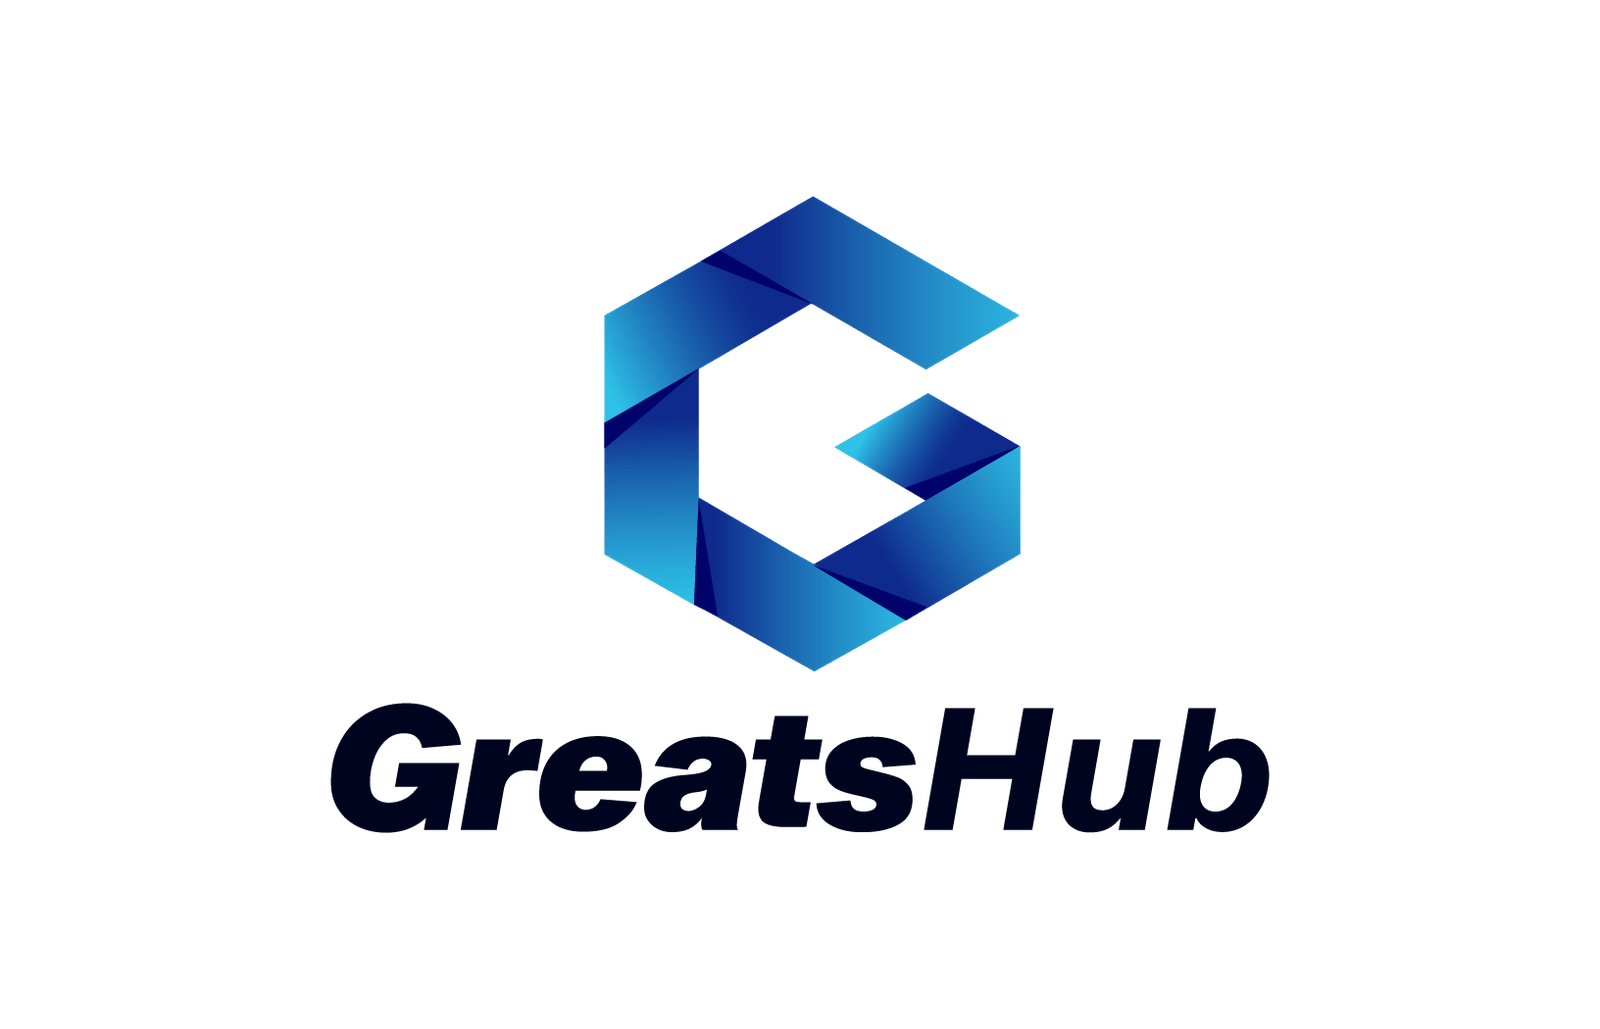 Greasthub logo